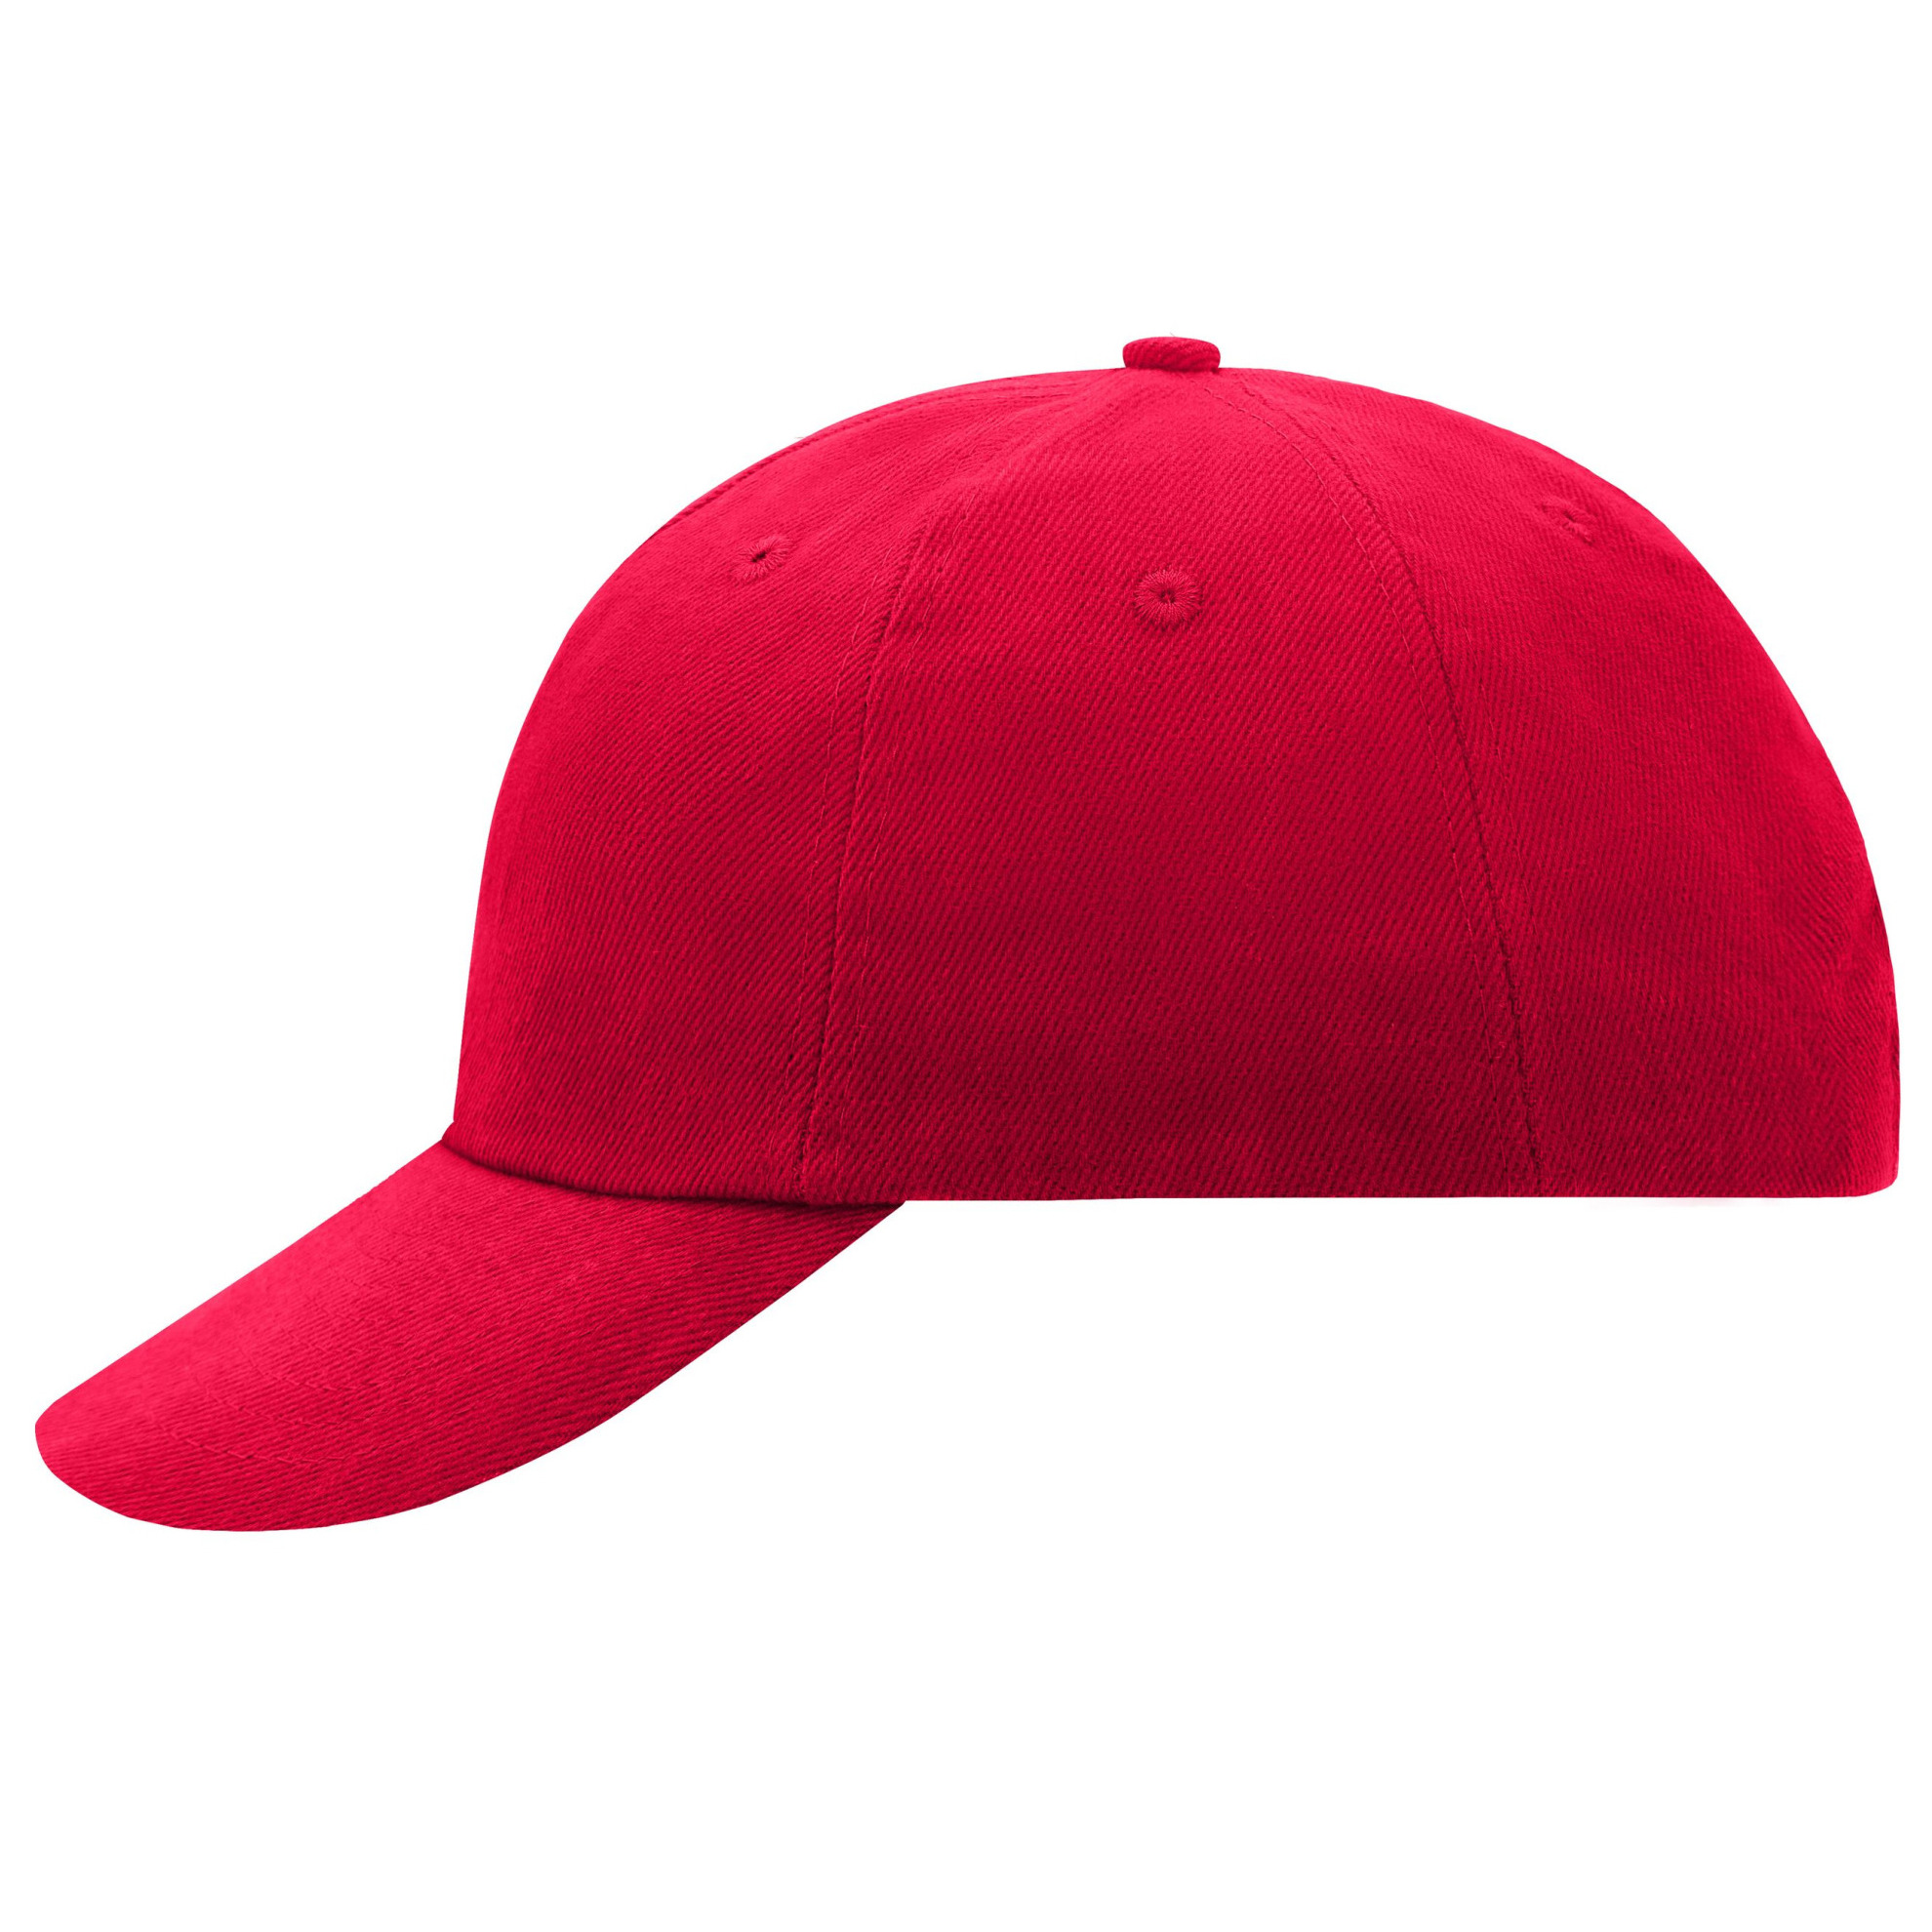 Rode baseballcap voor volwassenen